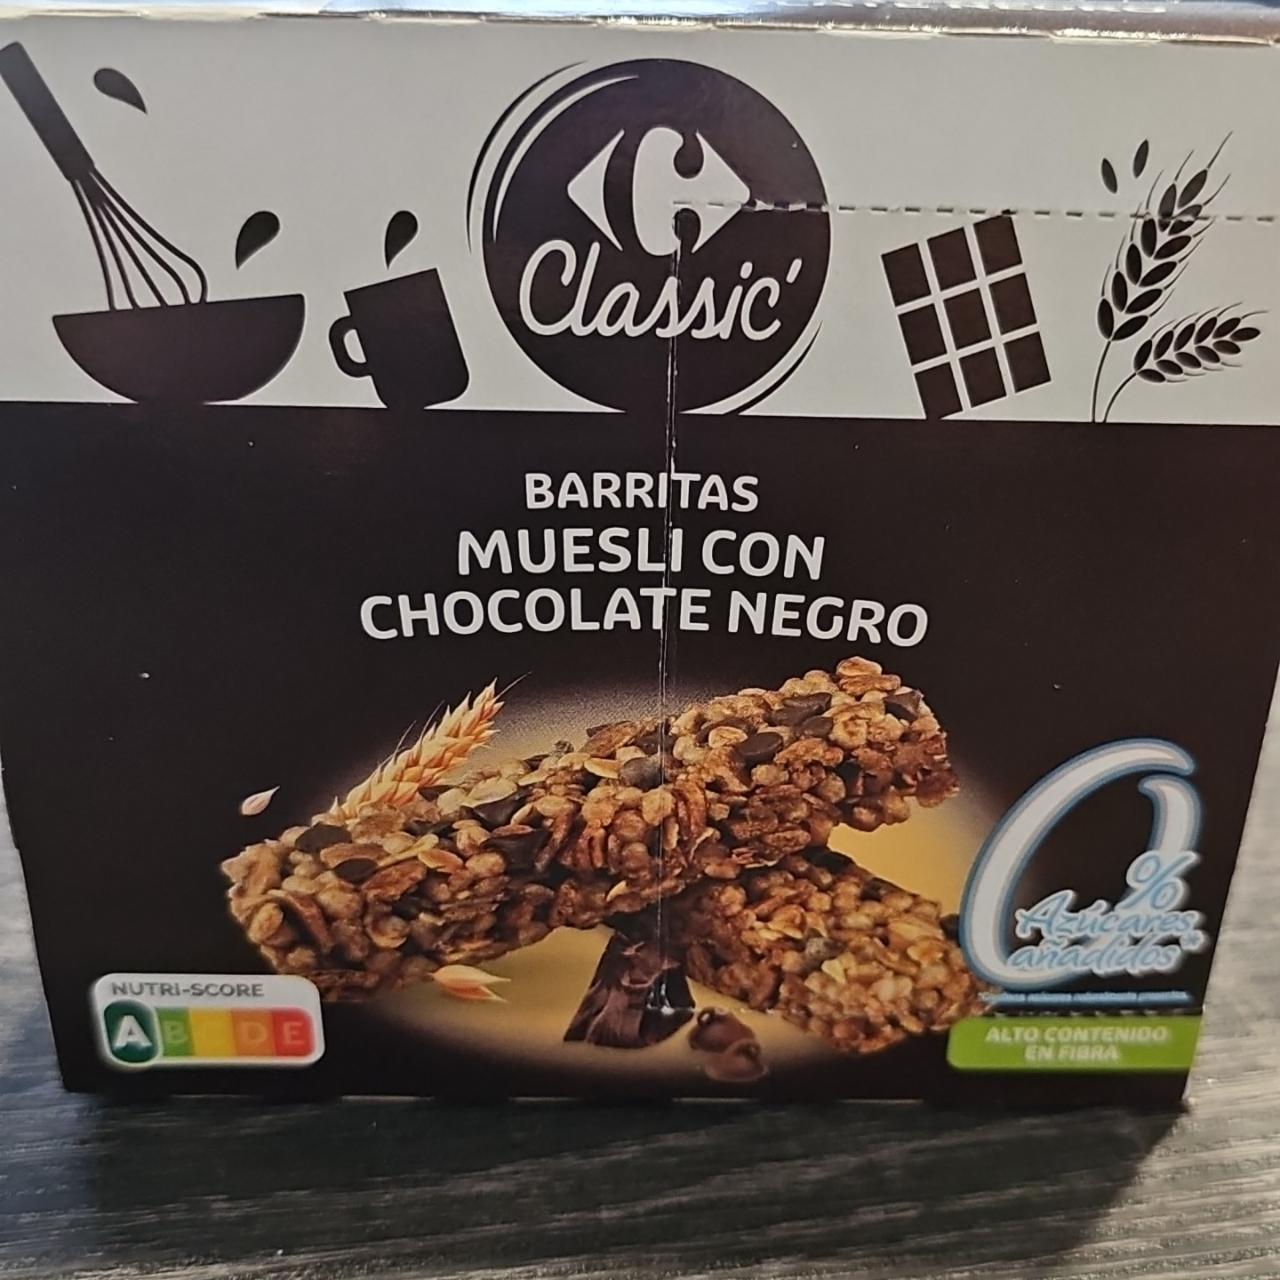 Fotografie - Barritas muesli con Chocolate negro Carrefour Classic